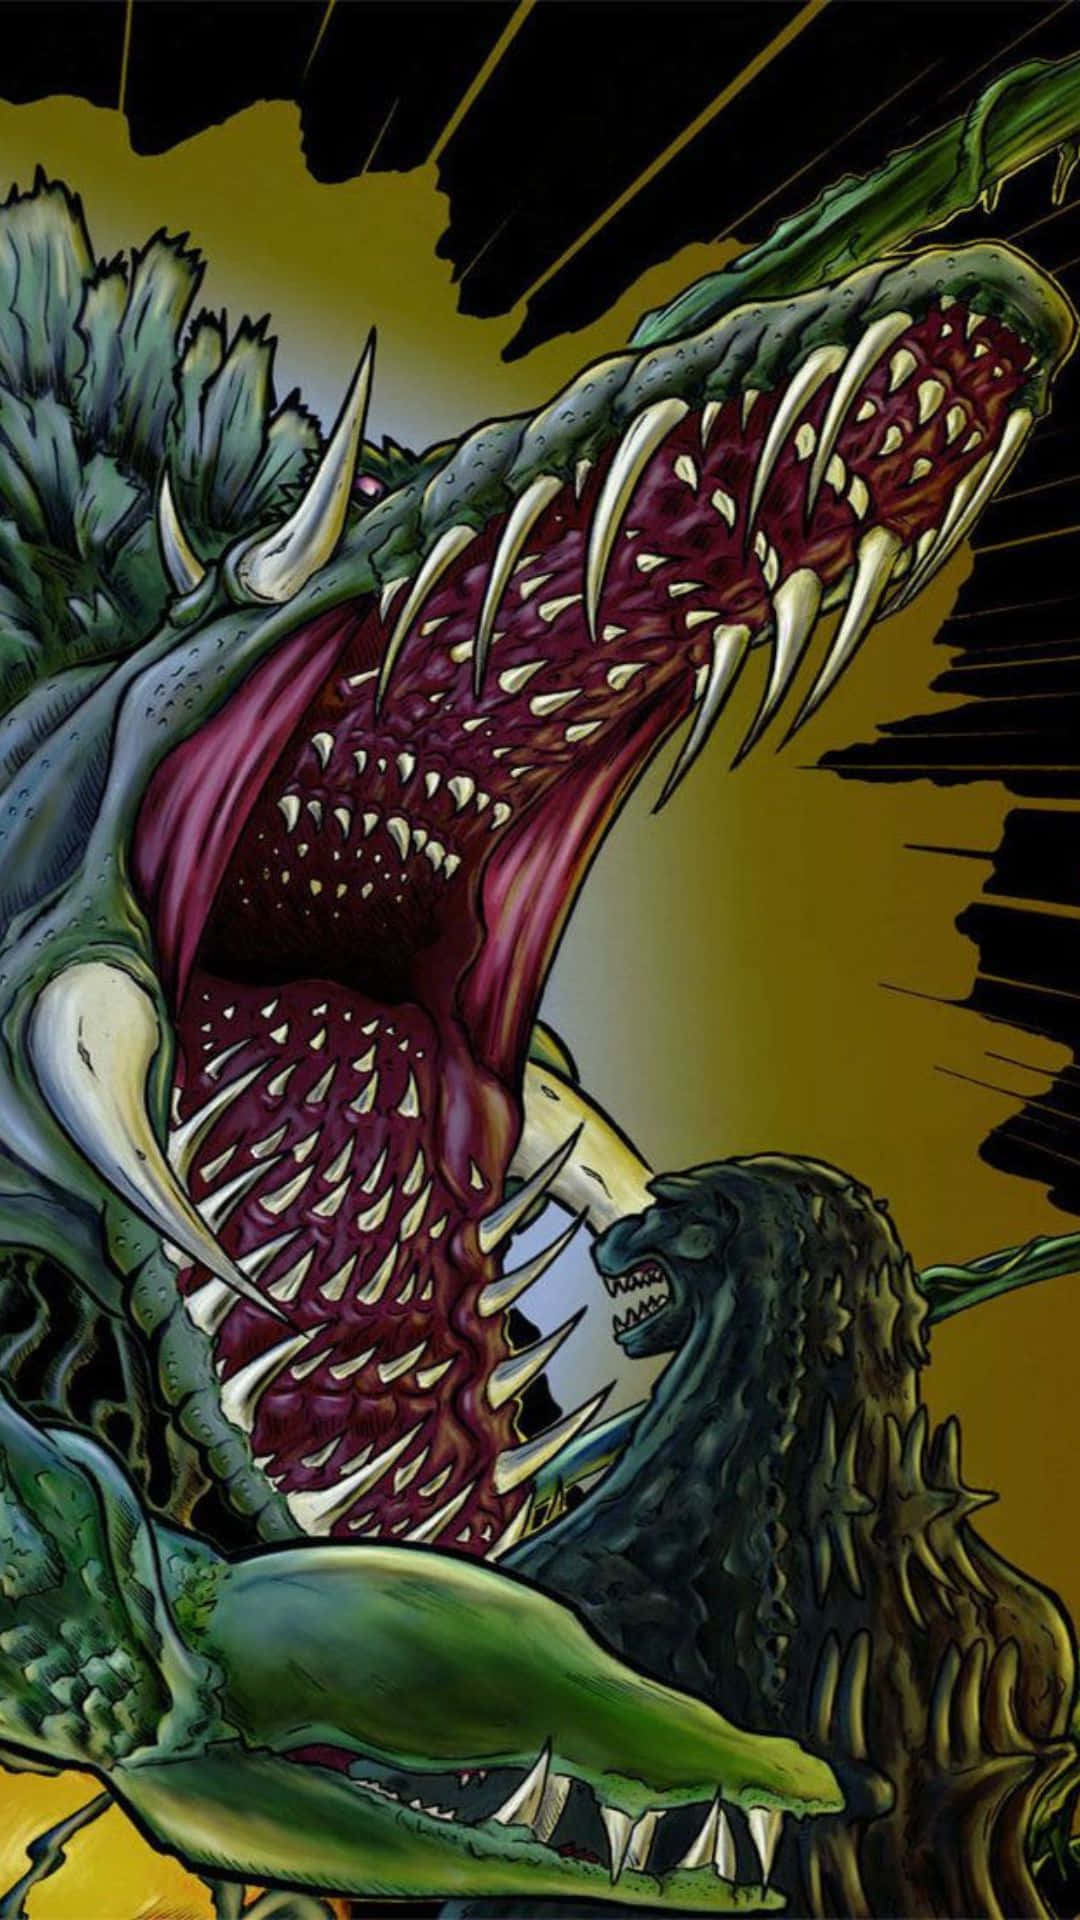 Godzilla fiercely battling Biollante in an epic showdown Wallpaper